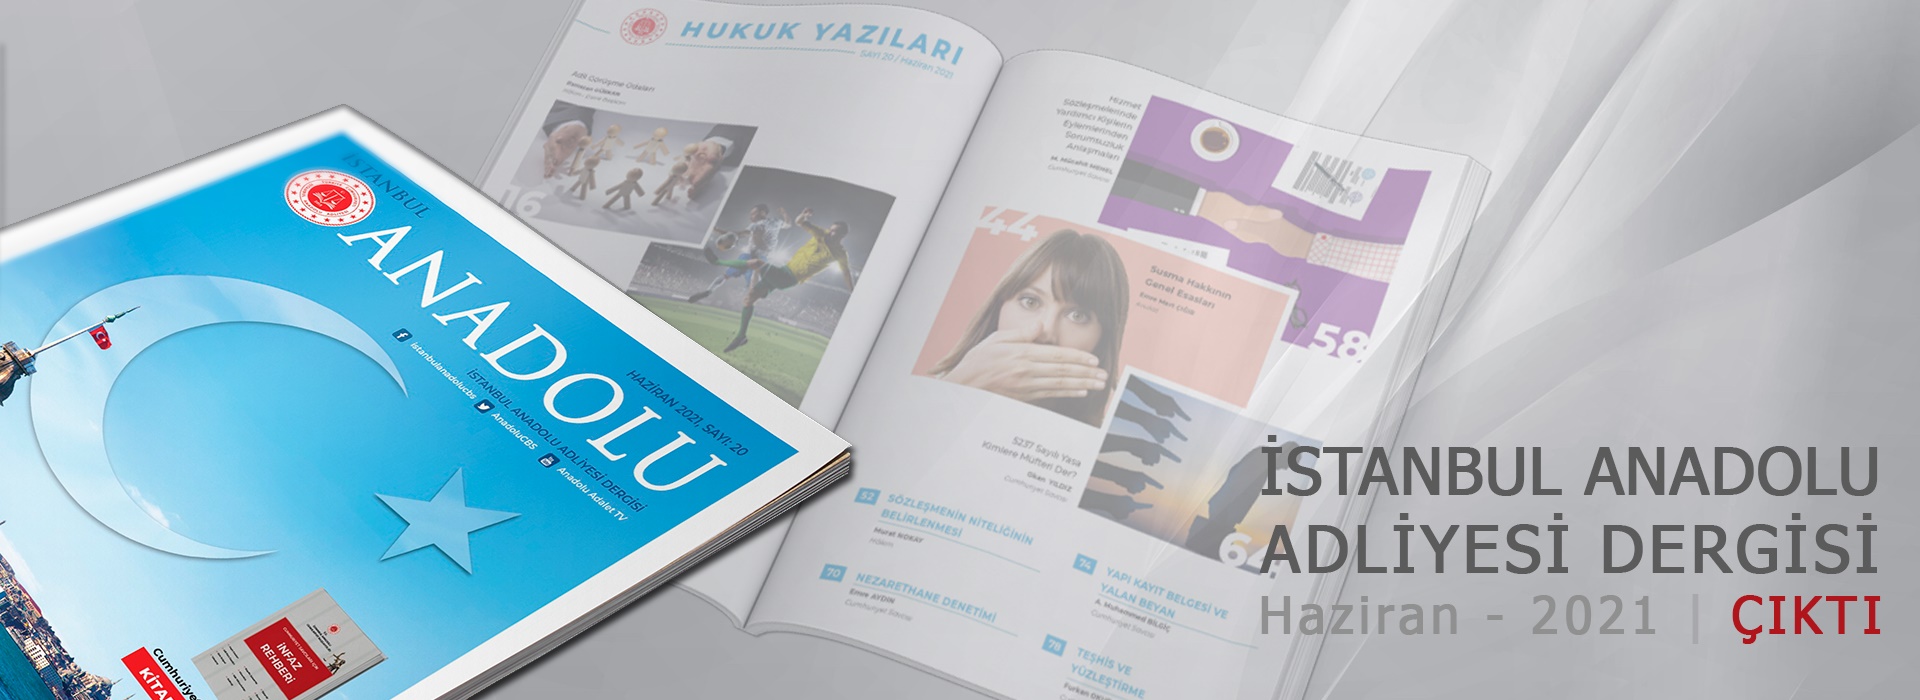 İstanbul Anadolu Adliyesi Dergisi | Yeni Sayı Çıktı